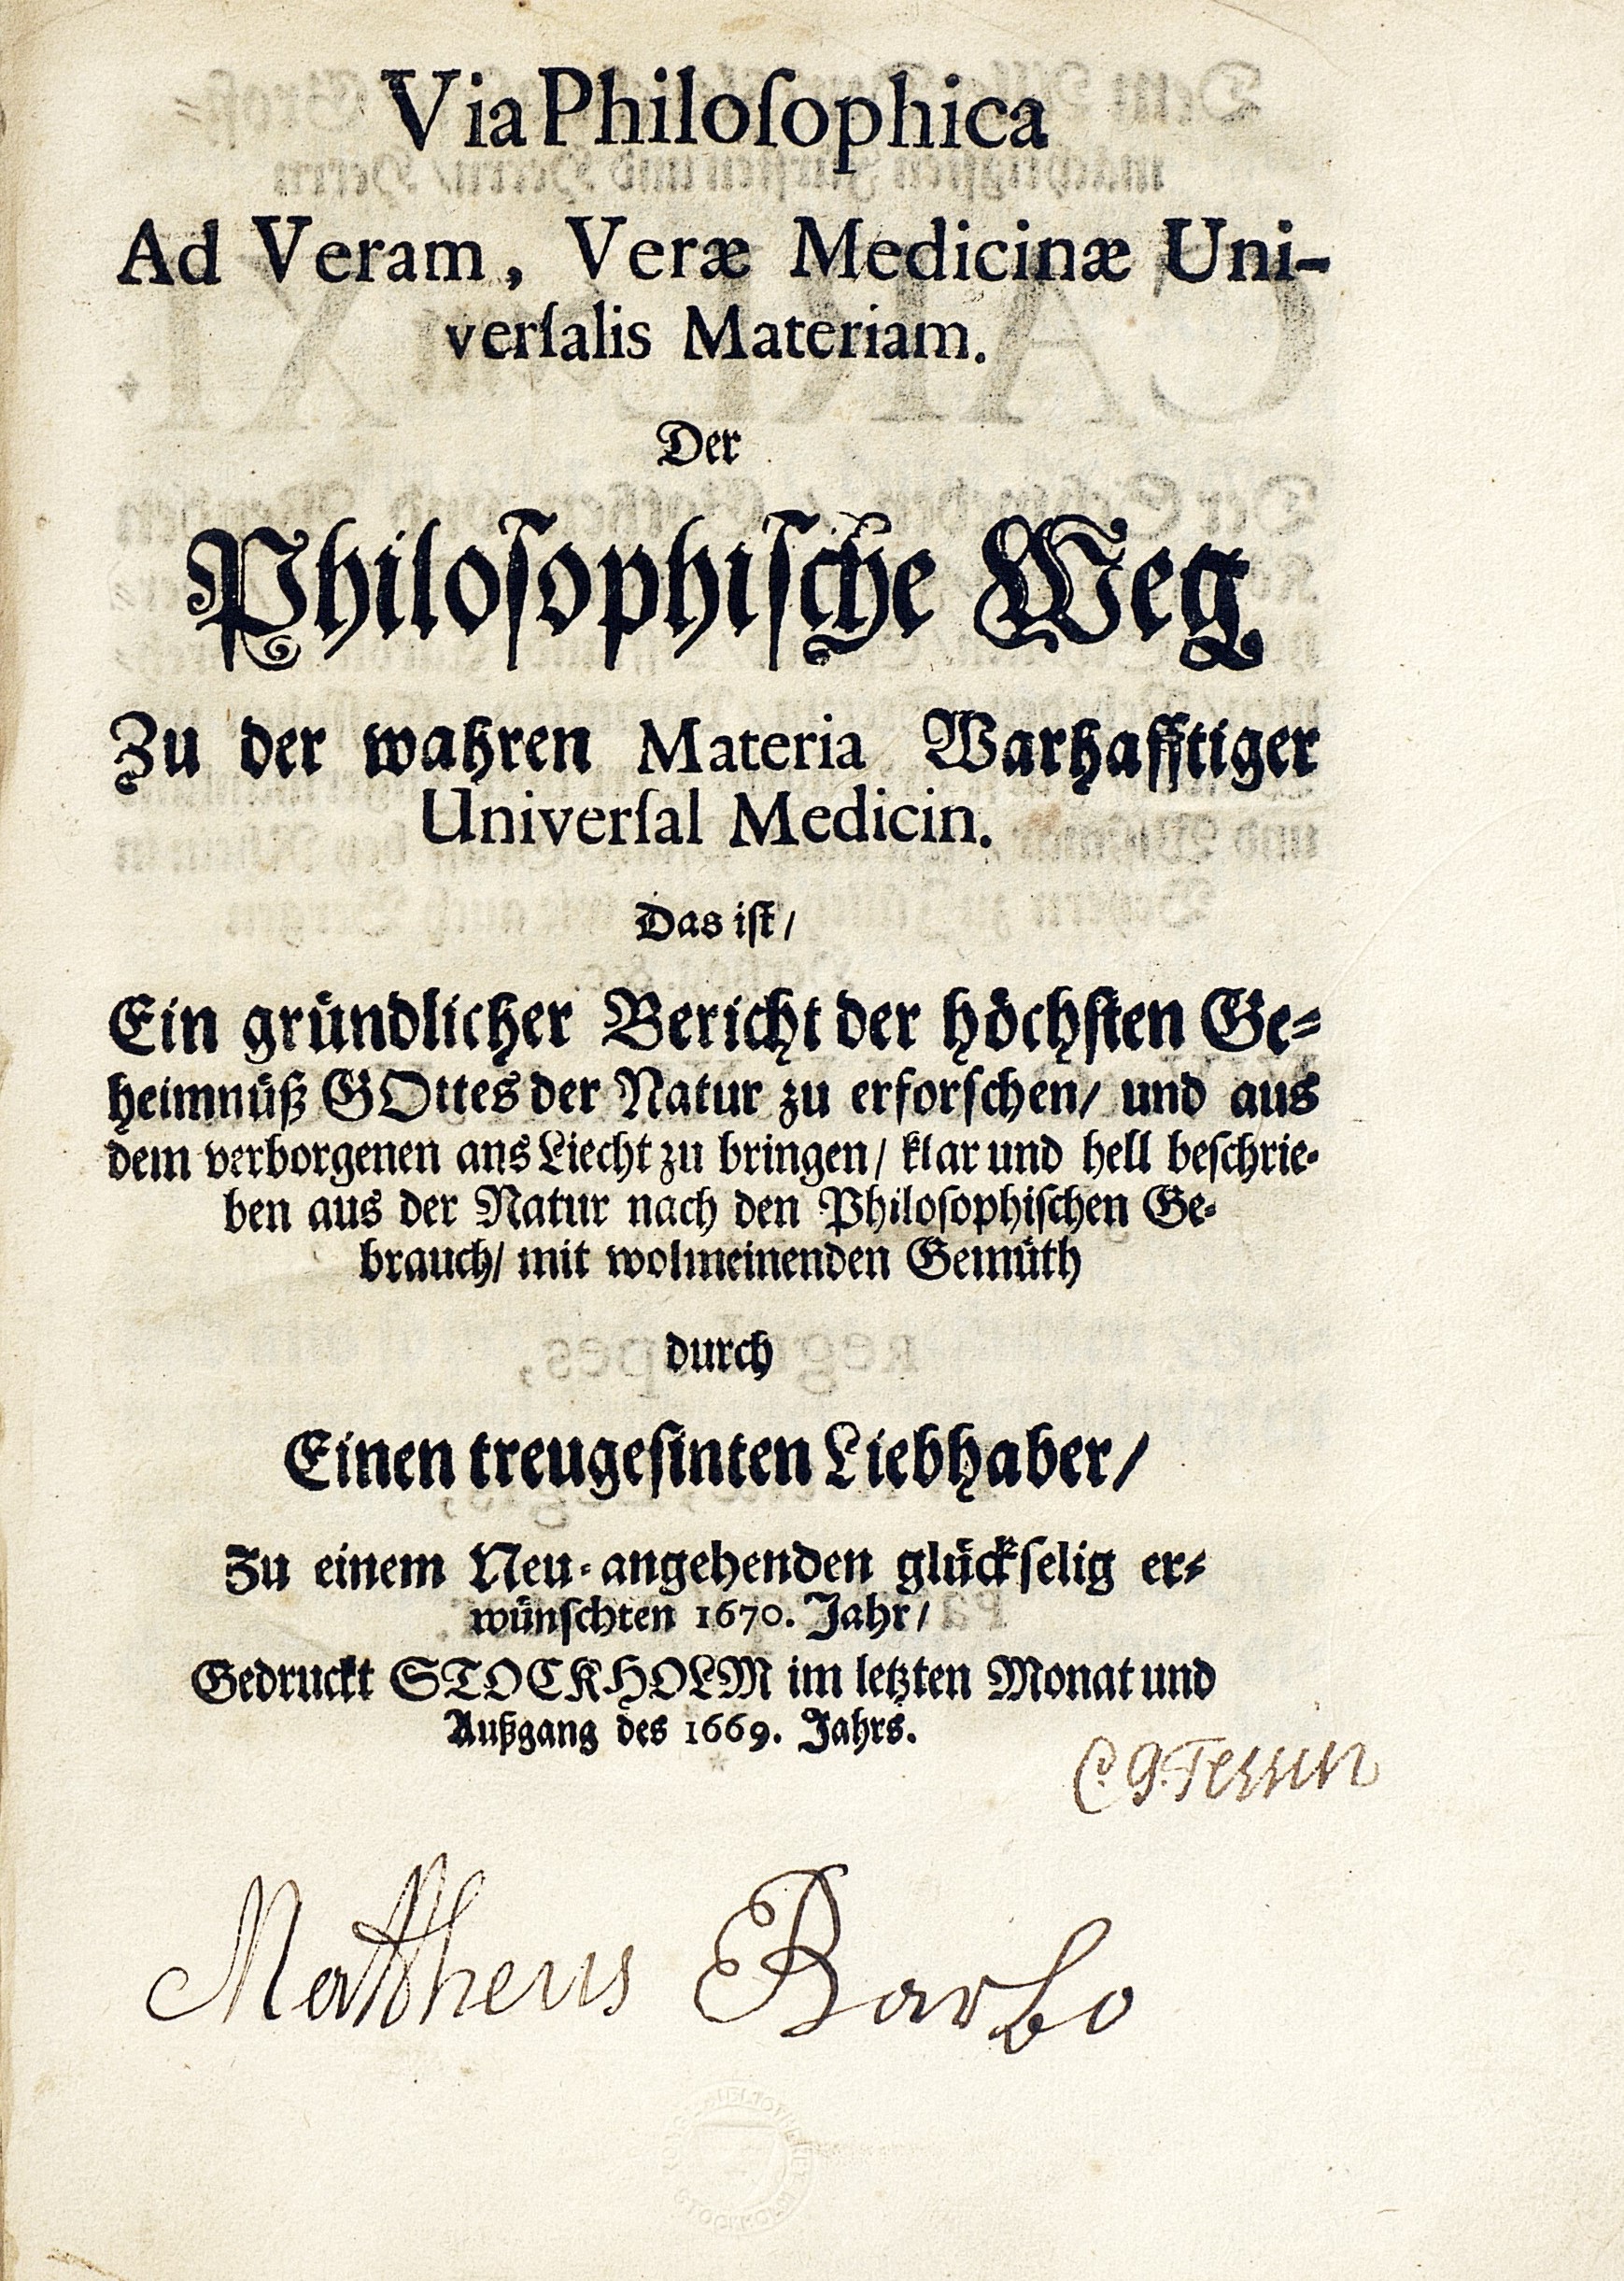 Titelsida på lumppapper med text i frakturstil: Via philosophica Ad Veram. Längre ner namnteckning av Carl Gustaf Tessin